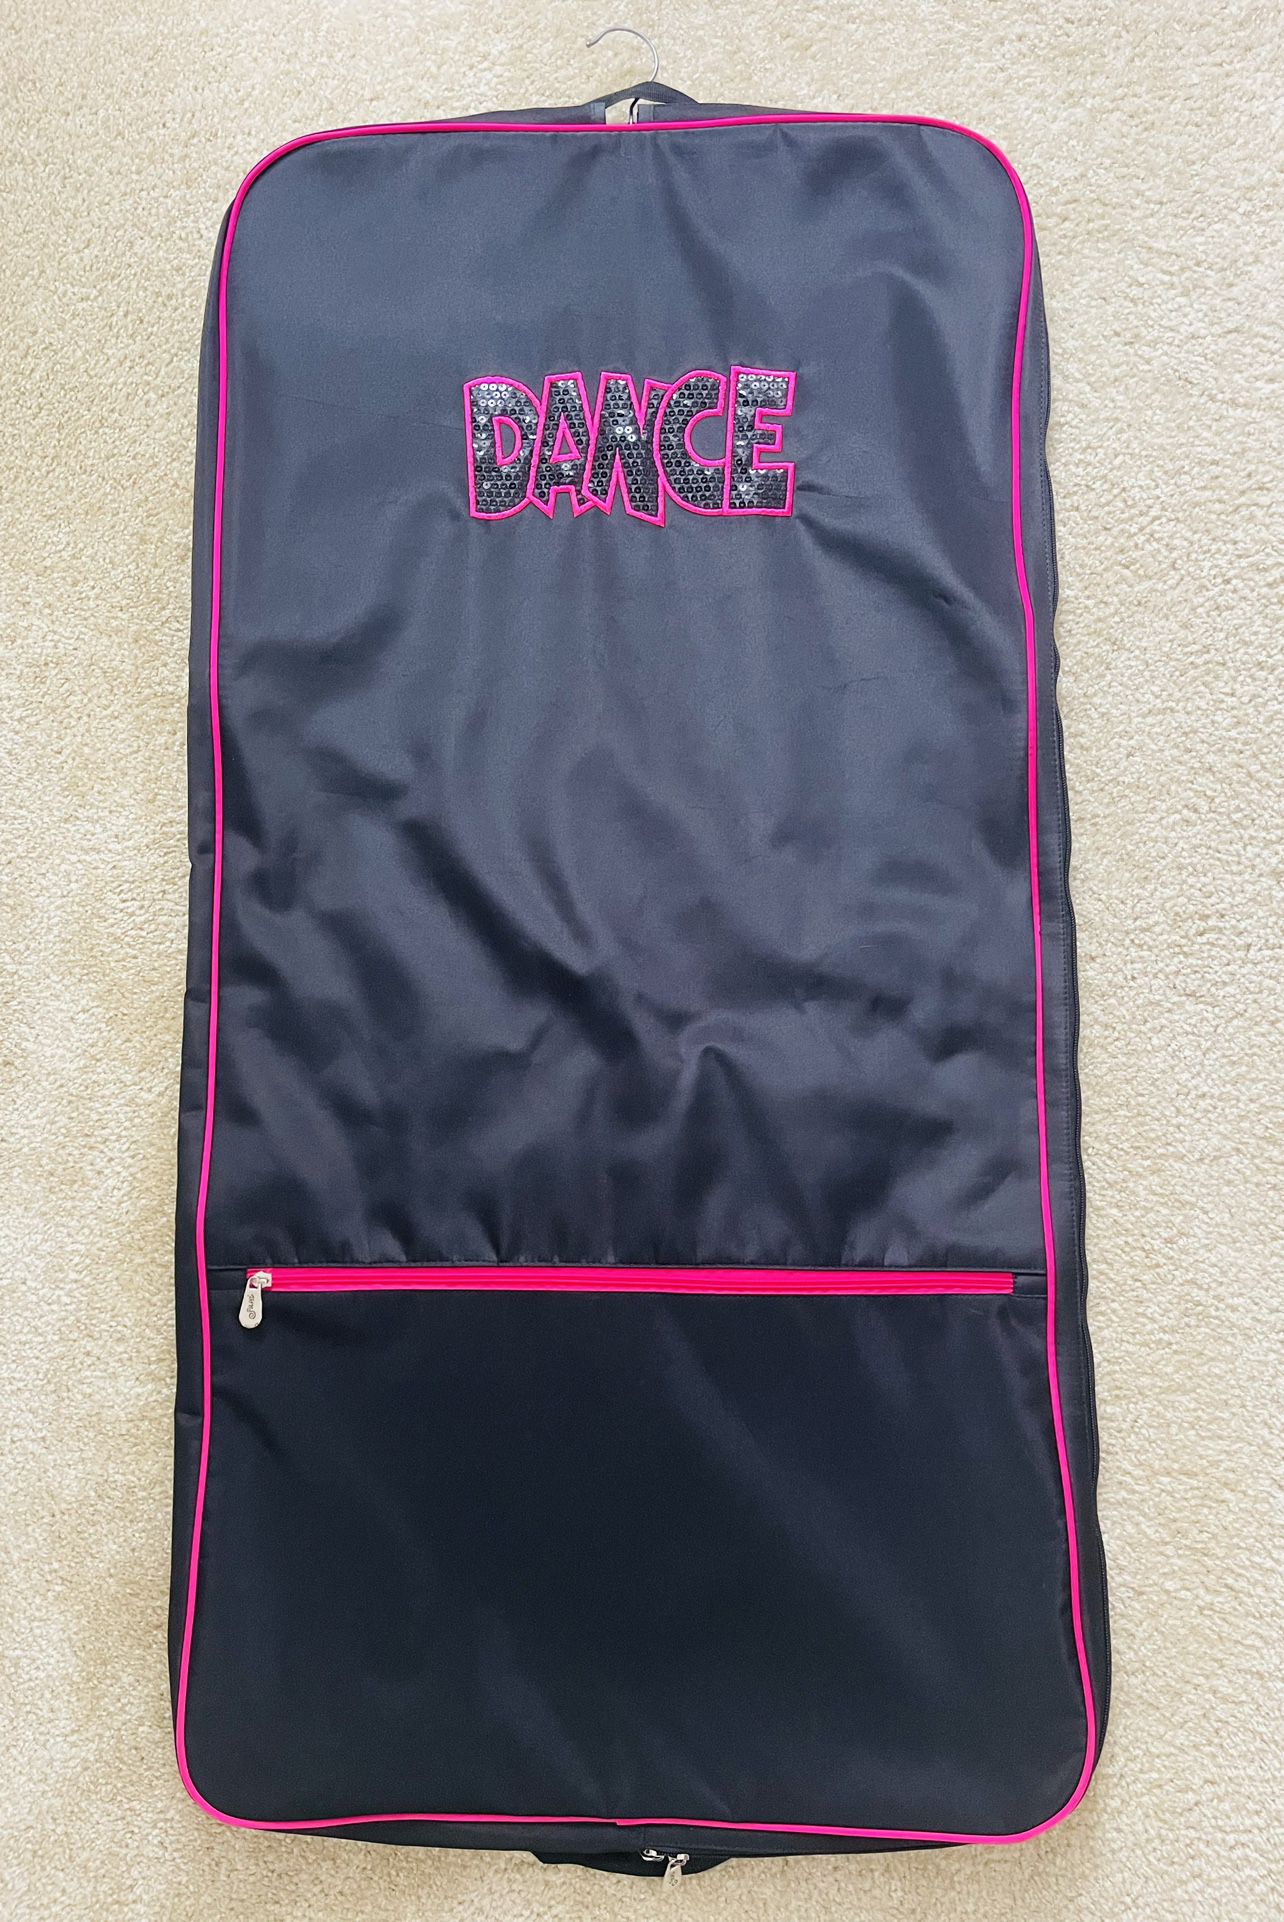 Dance Garmet Bag / carrier holder